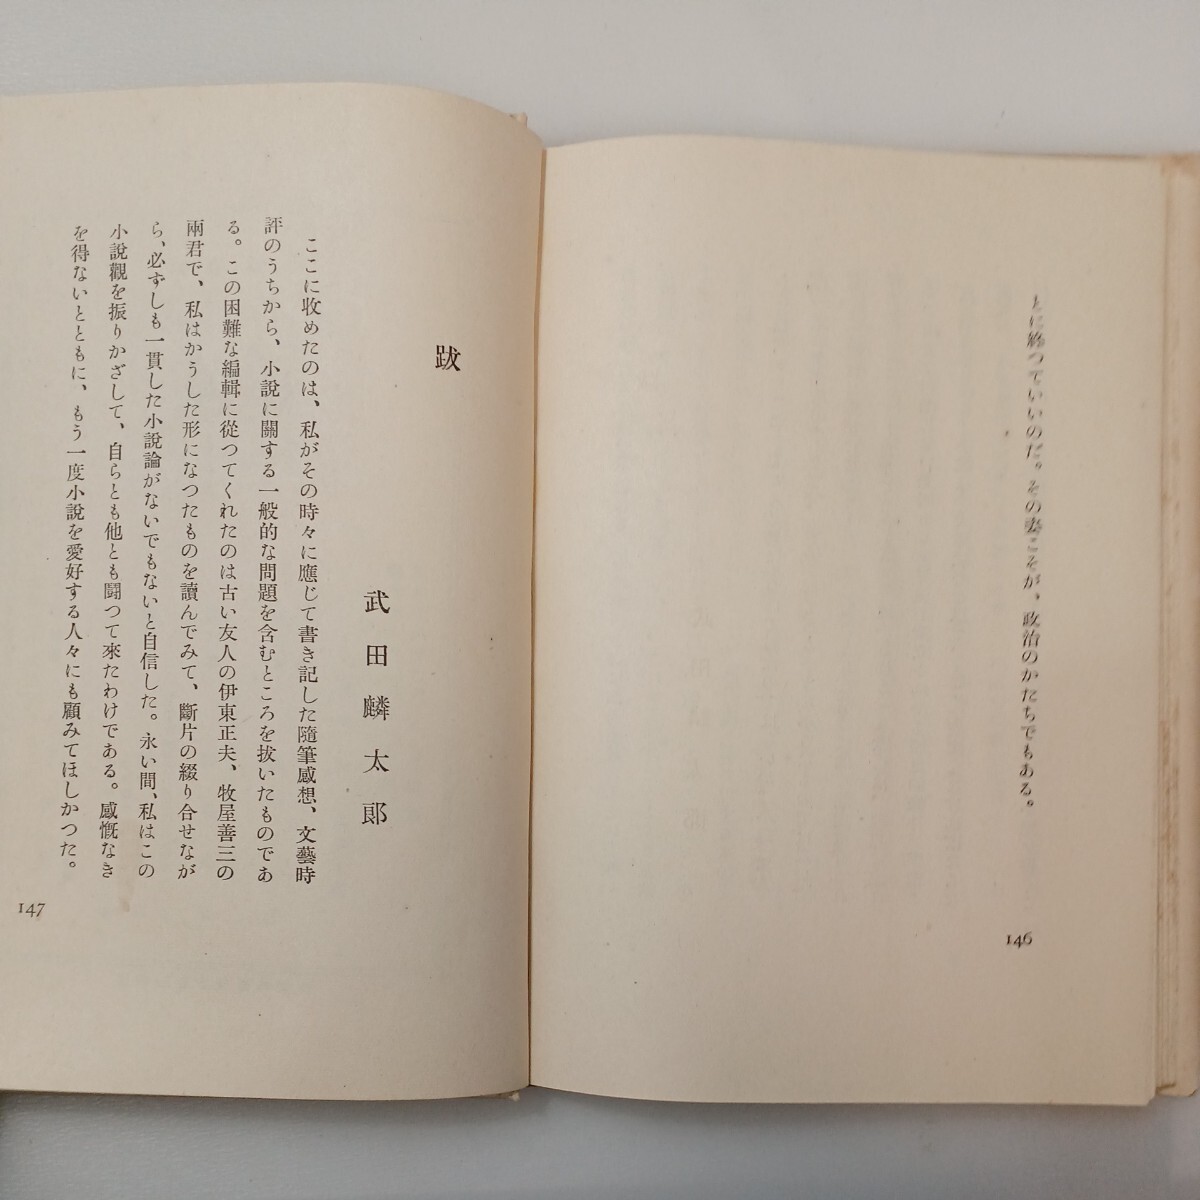 zaa-576♪小説作法 武田麟太郎 (著) 出版社 明石書房 昭和16年 1941/2/13